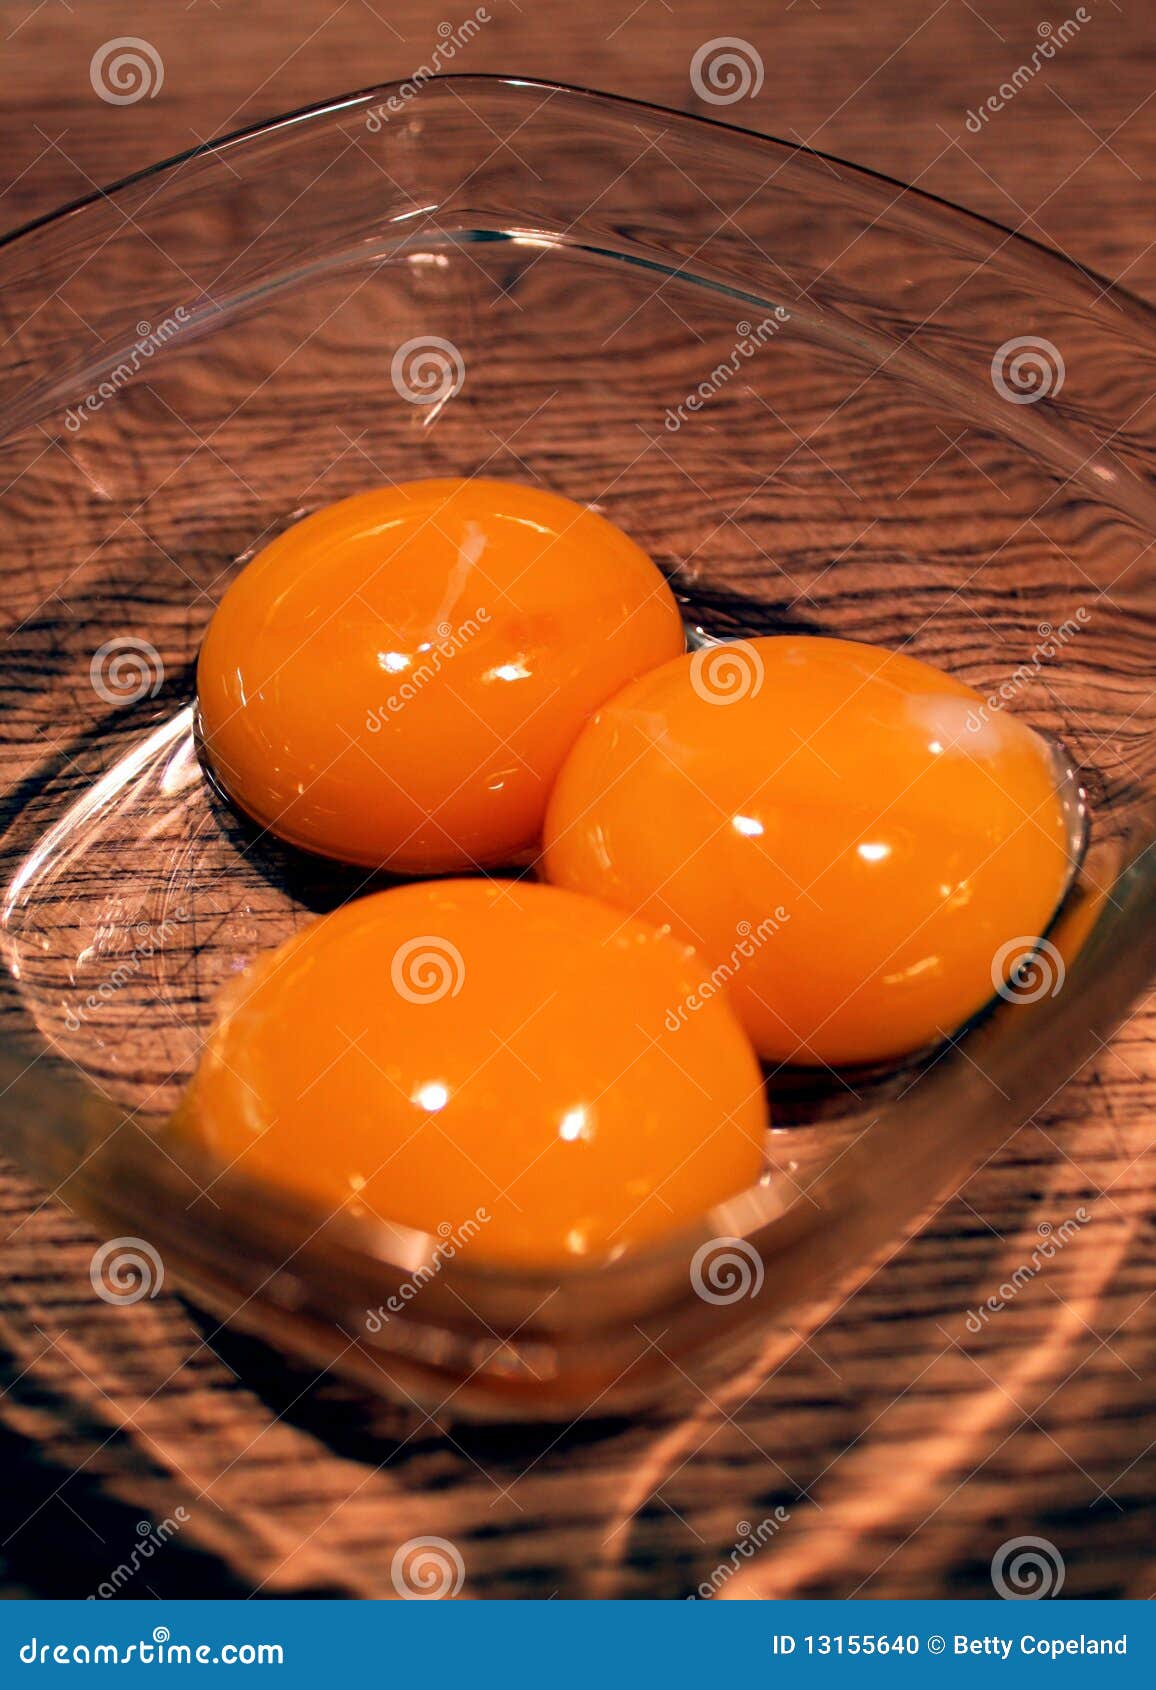 Почему яйцо оранжевое. Оранжевый желток. Яичный желток оранжевый. Яйцо с оранжевым желтком фирма. Упаковка яйца с оранжевым желтком.